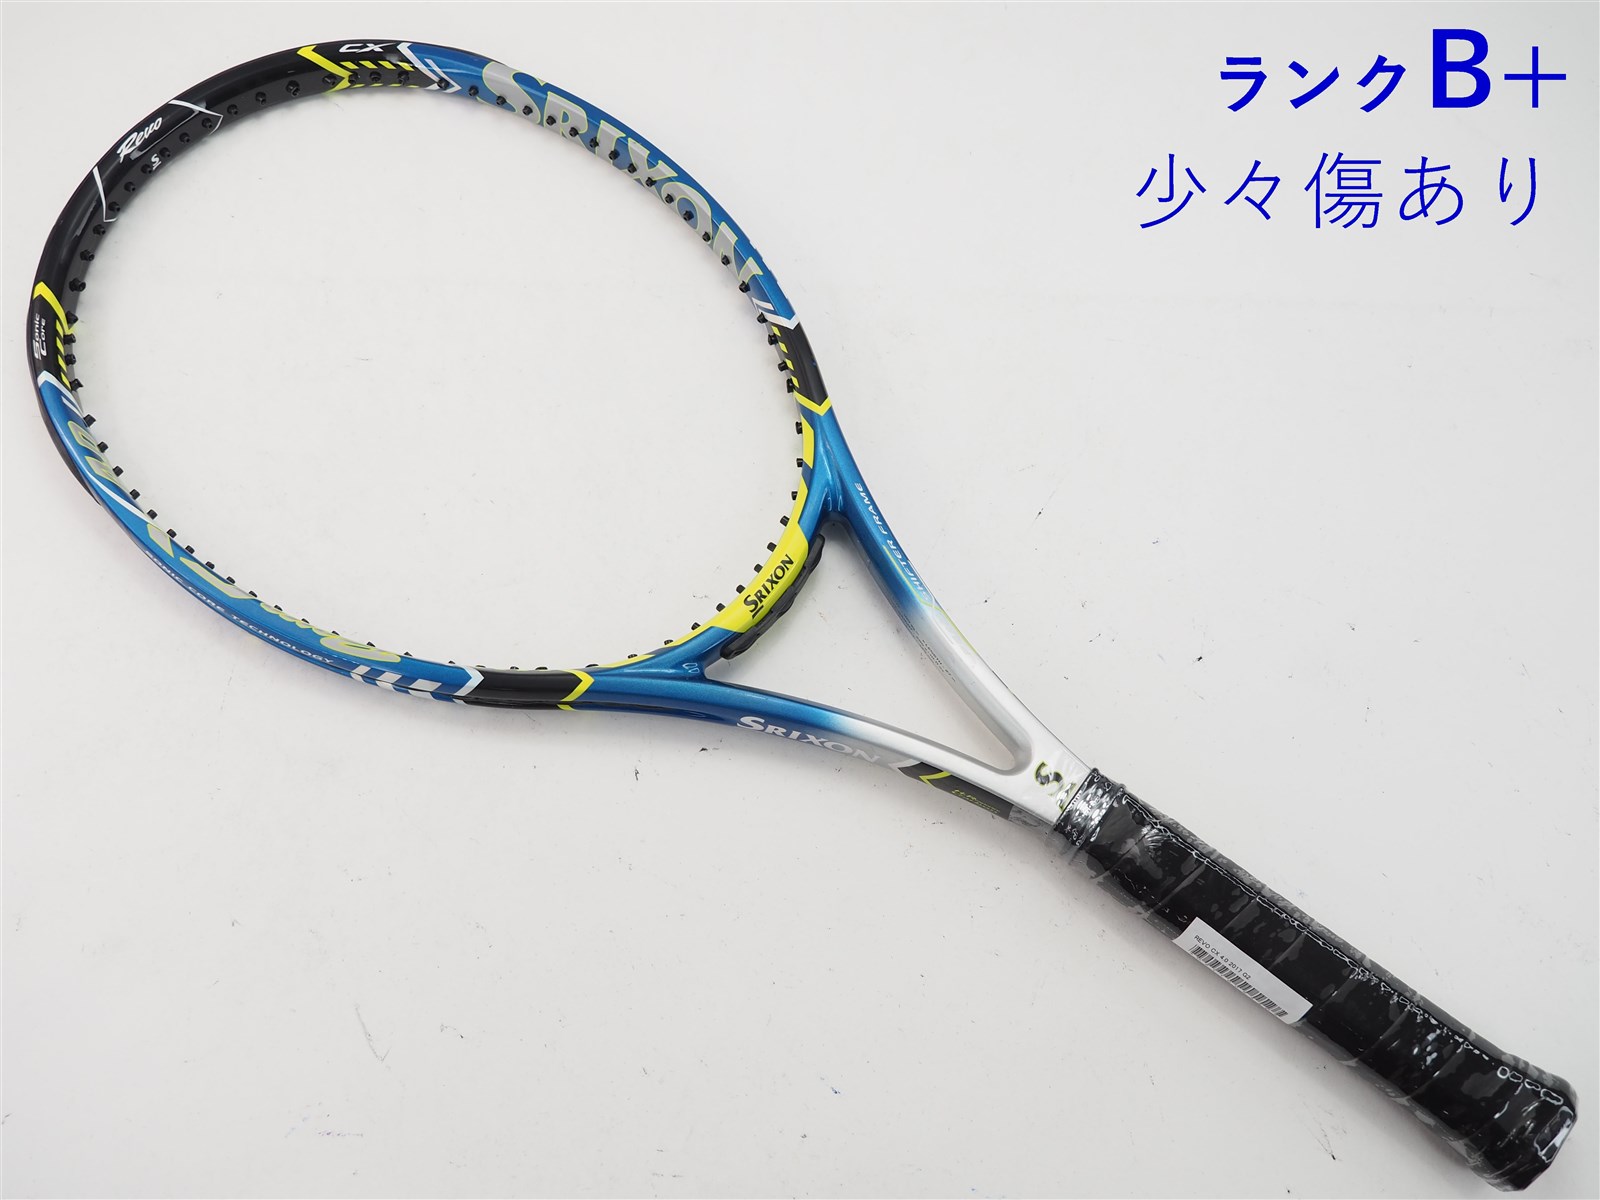 24mm重量テニスラケット スリクソン レヴォ シーエックス 4.0 2017年モデル (G2)SRIXON REVO CX 4.0 2017